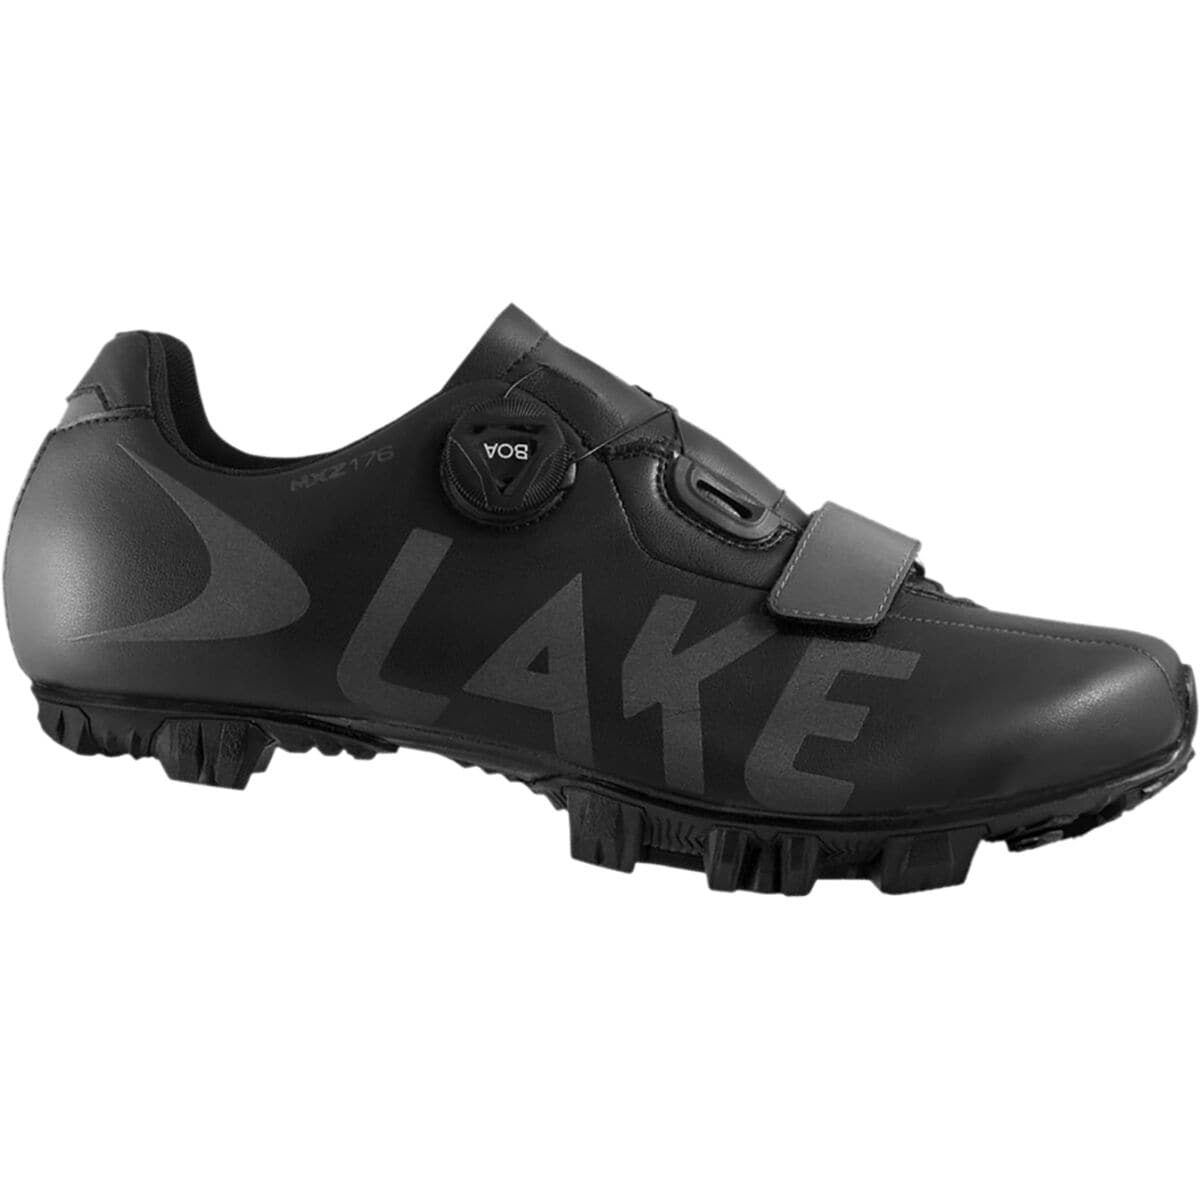 Lake MXZ176 Cycling Shoe - Men's